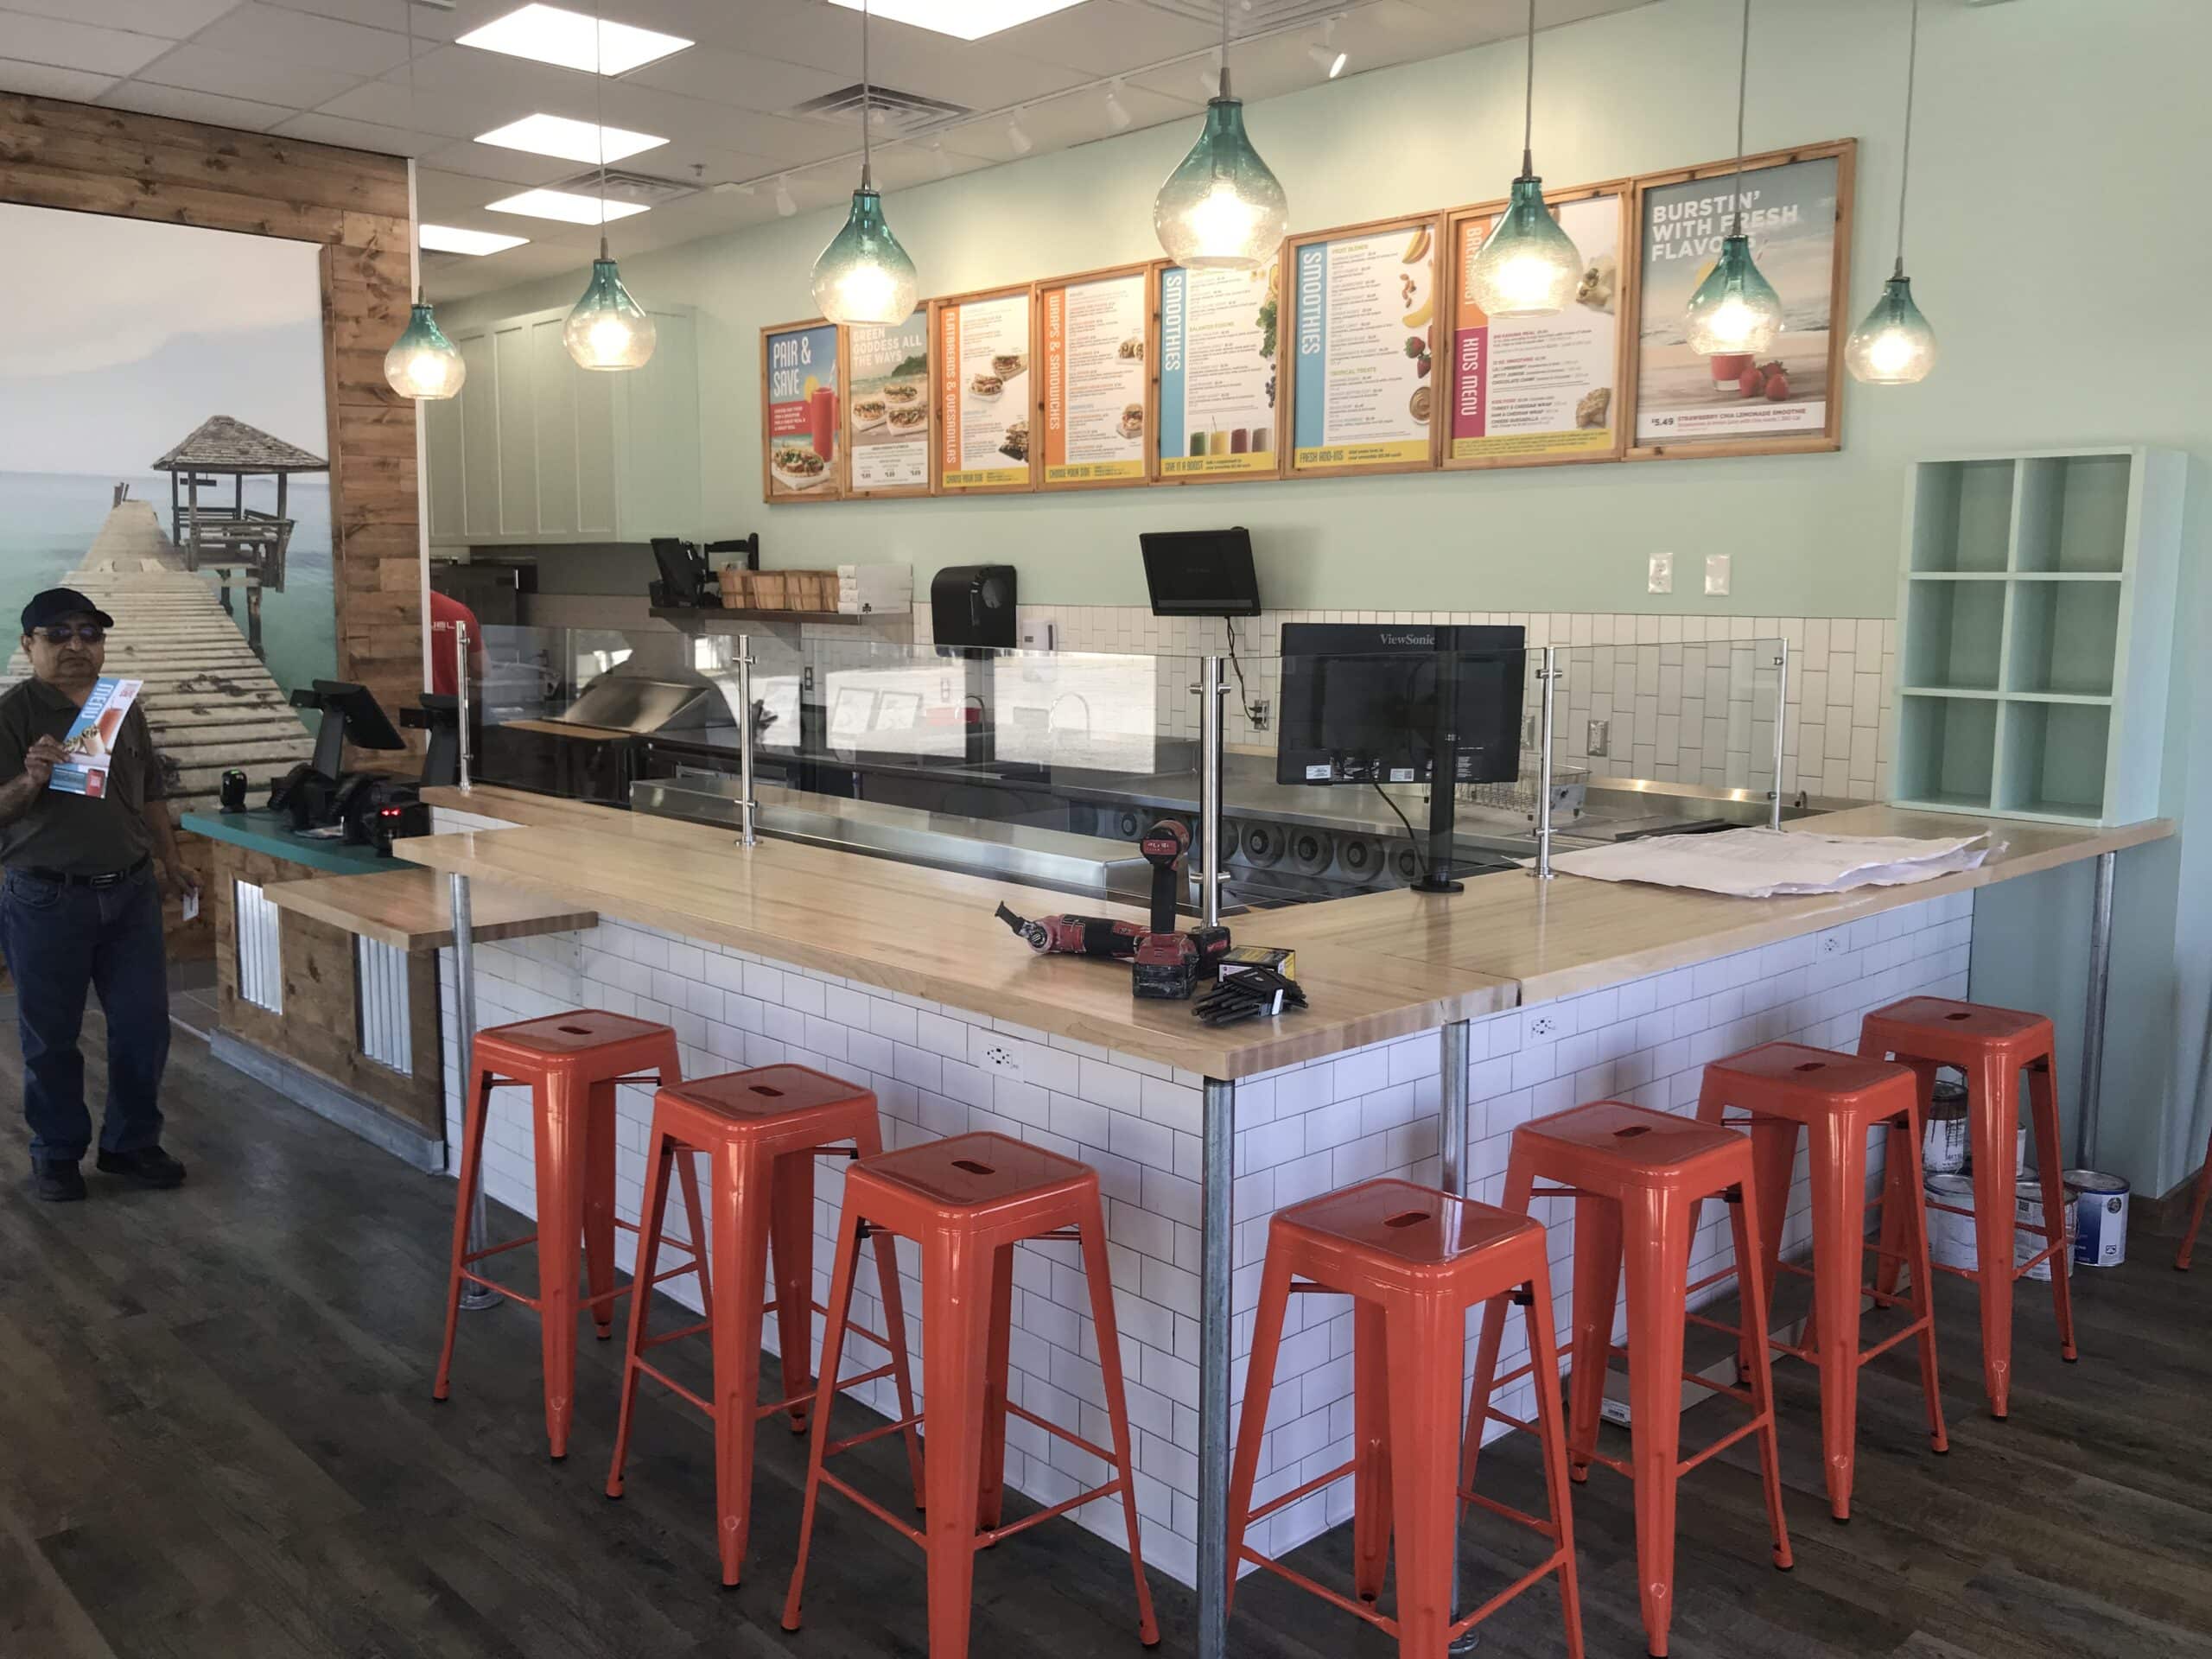 Tropical Smoothie Cafe to open in O'Fallon, MO